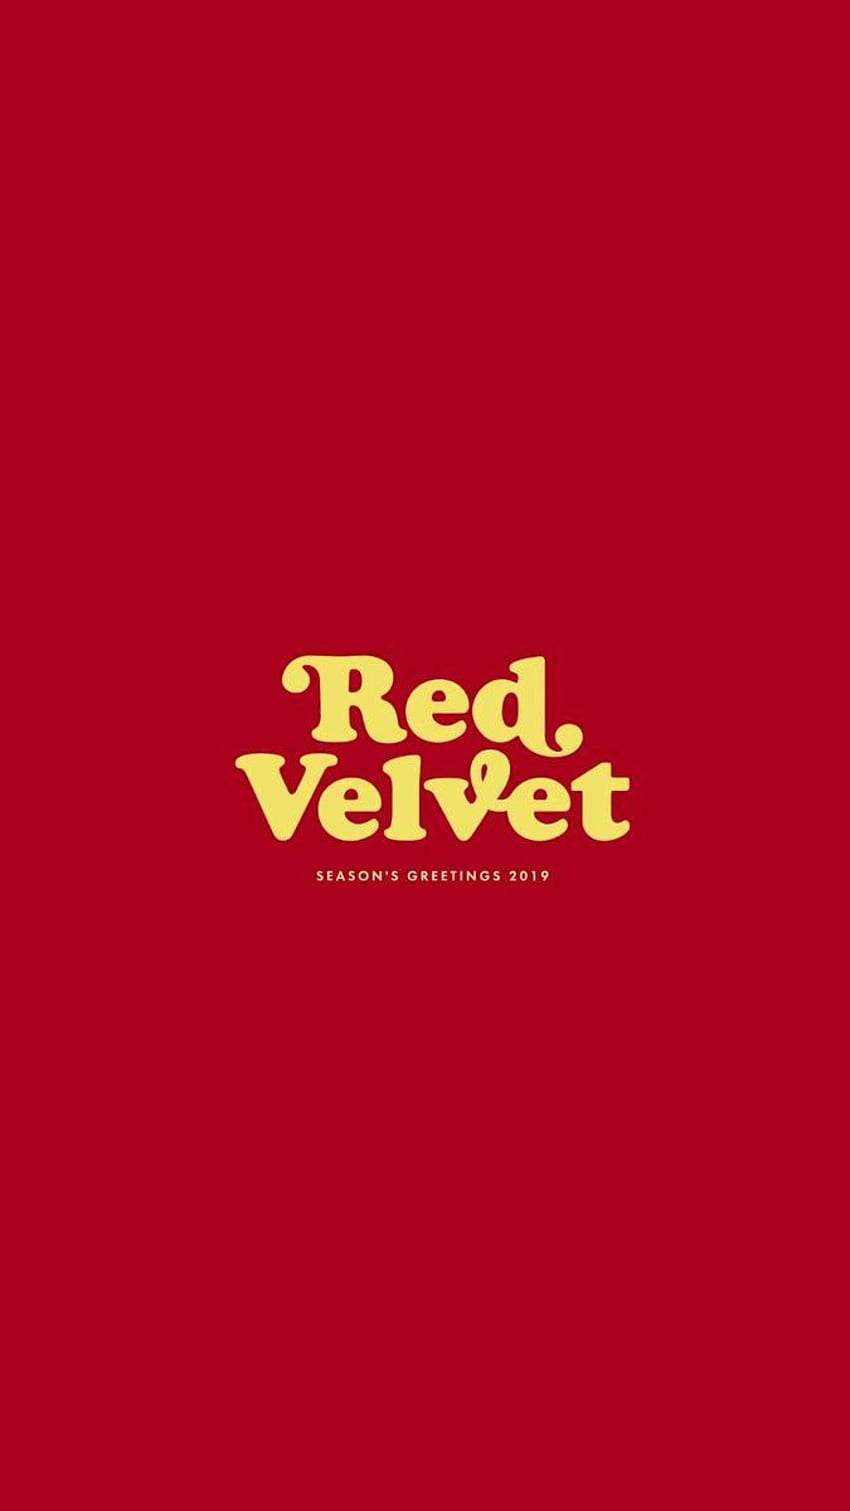 Red Velvet, Red Velvet Logo HD phone wallpaper